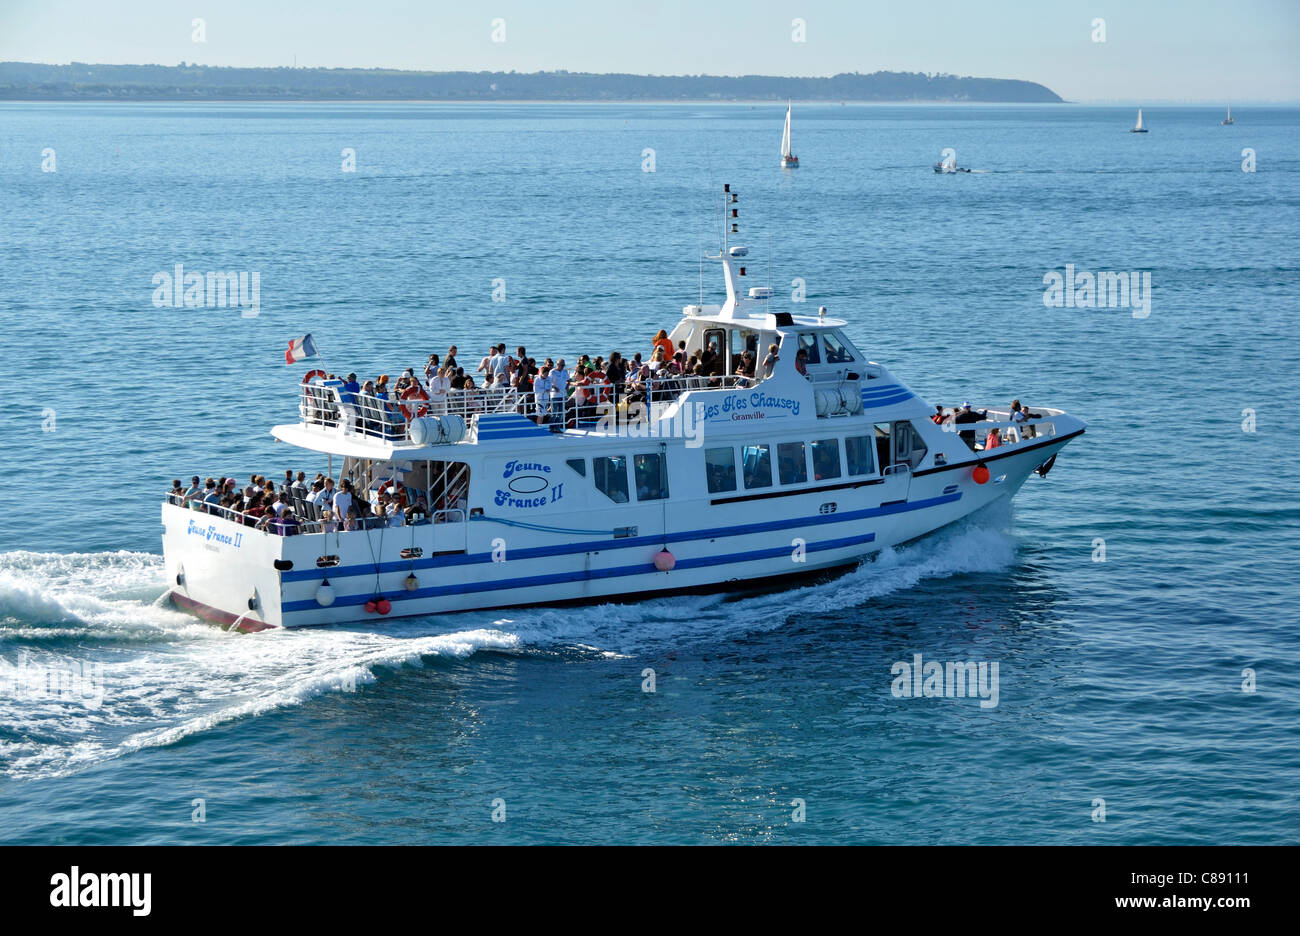 Nave passeggeri lascia il porto di Granville, destinazione : Isole Chausey. Foto Stock